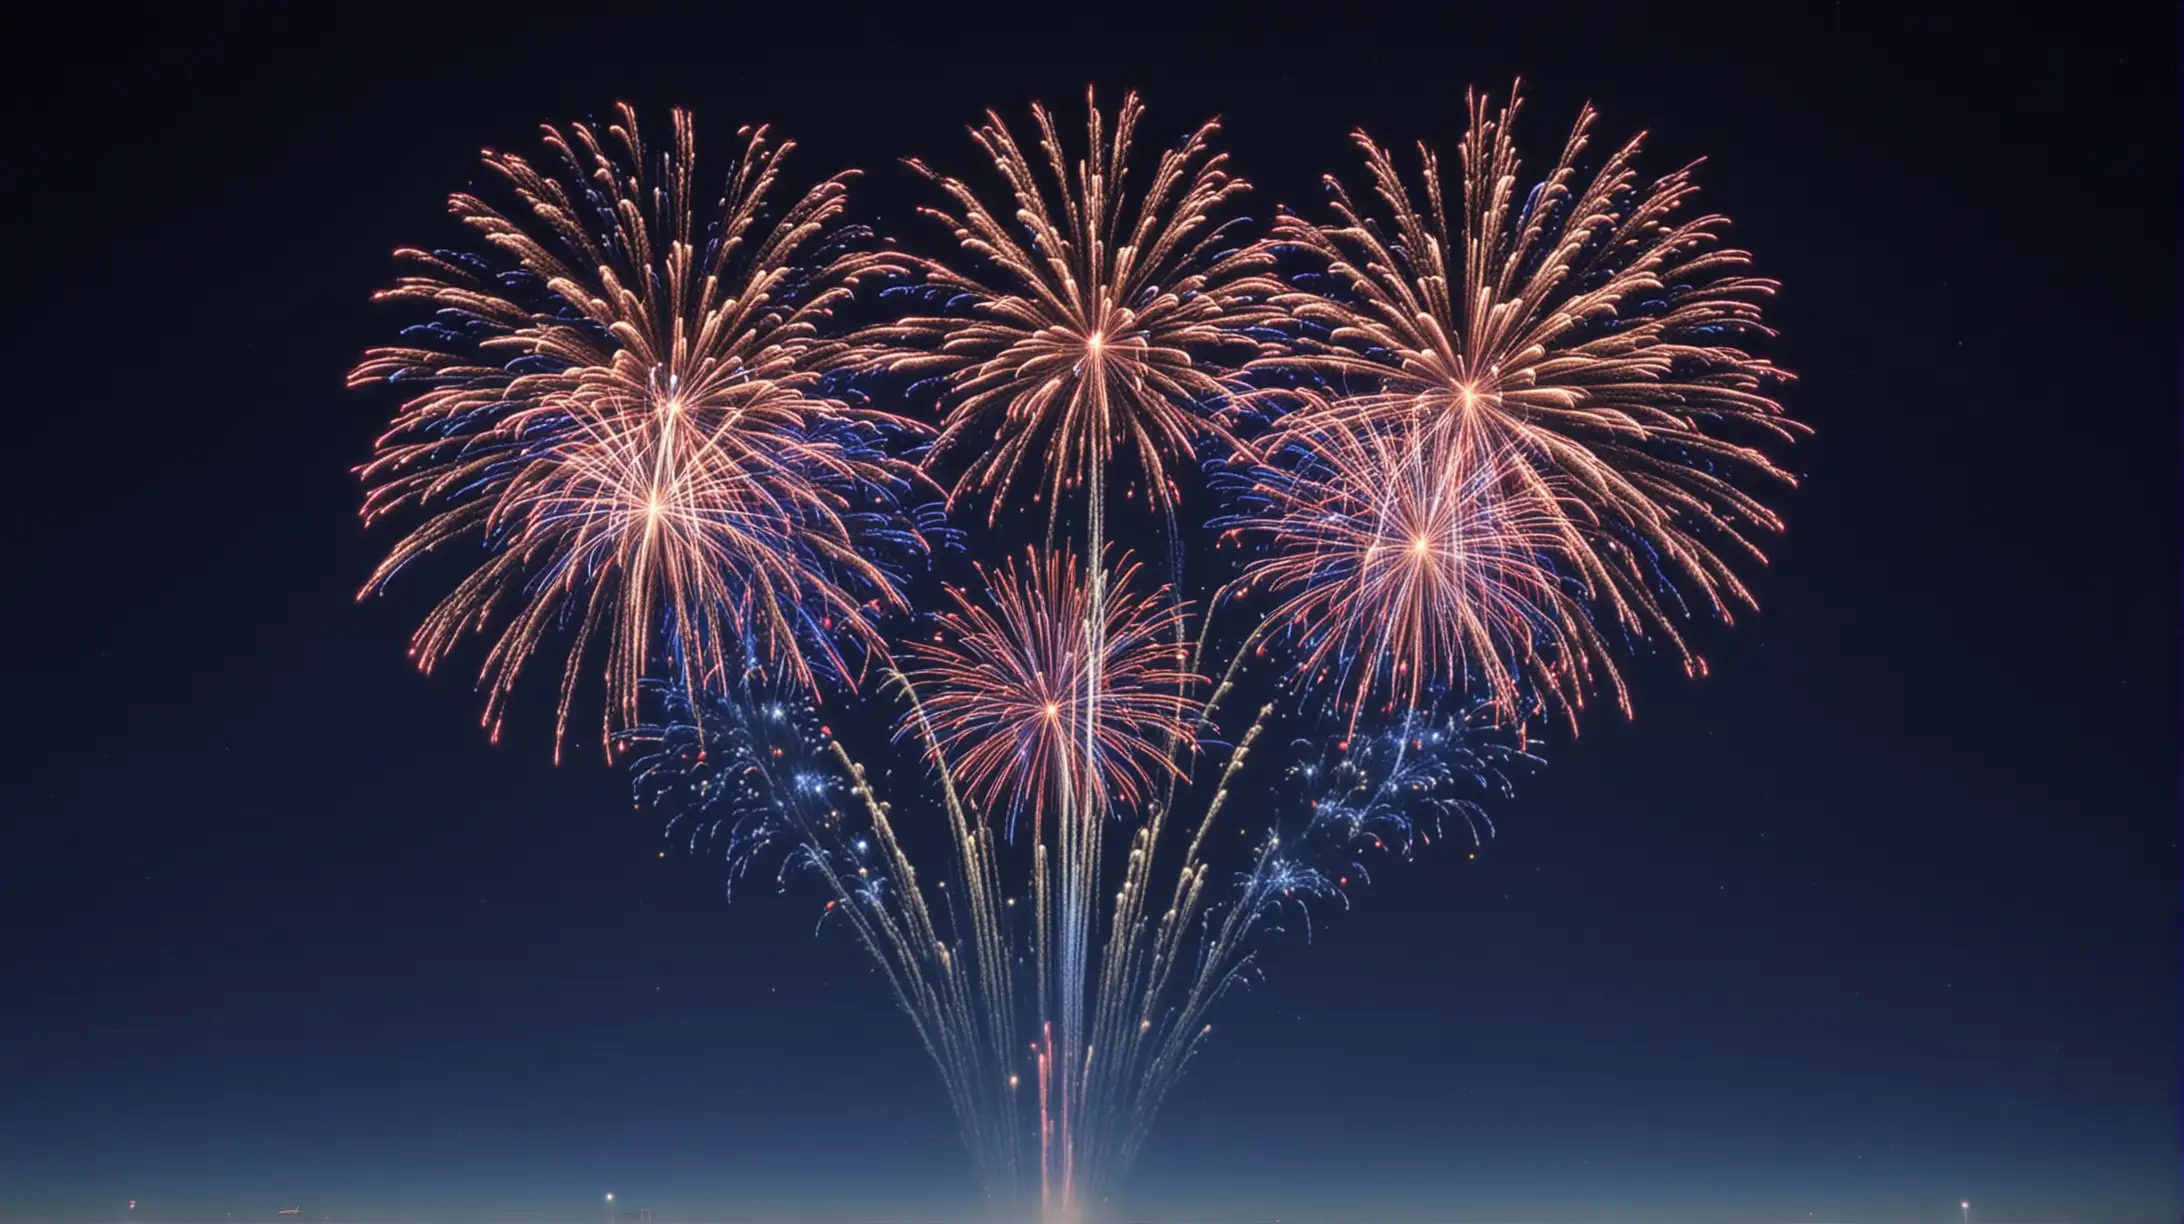 Vivid Small Glowing Fireworks Display Against Dark Blue Sky